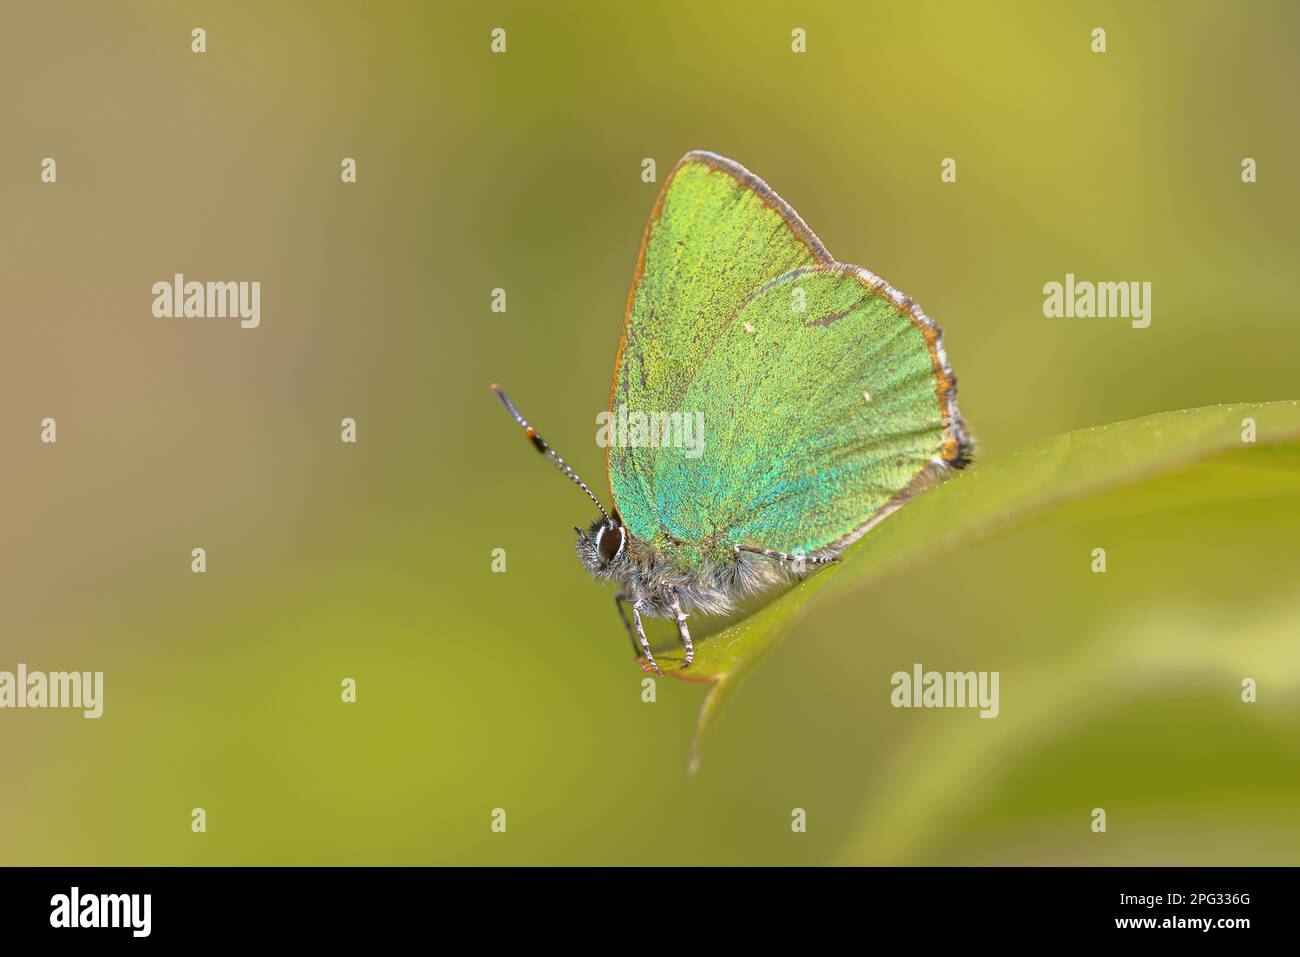 Grüner Haarstreifen (Callophrys rubi) Schmetterling auf grünem Blatt mit grünem Hintergrund. Naturlandschaft in Europa. Stockfoto